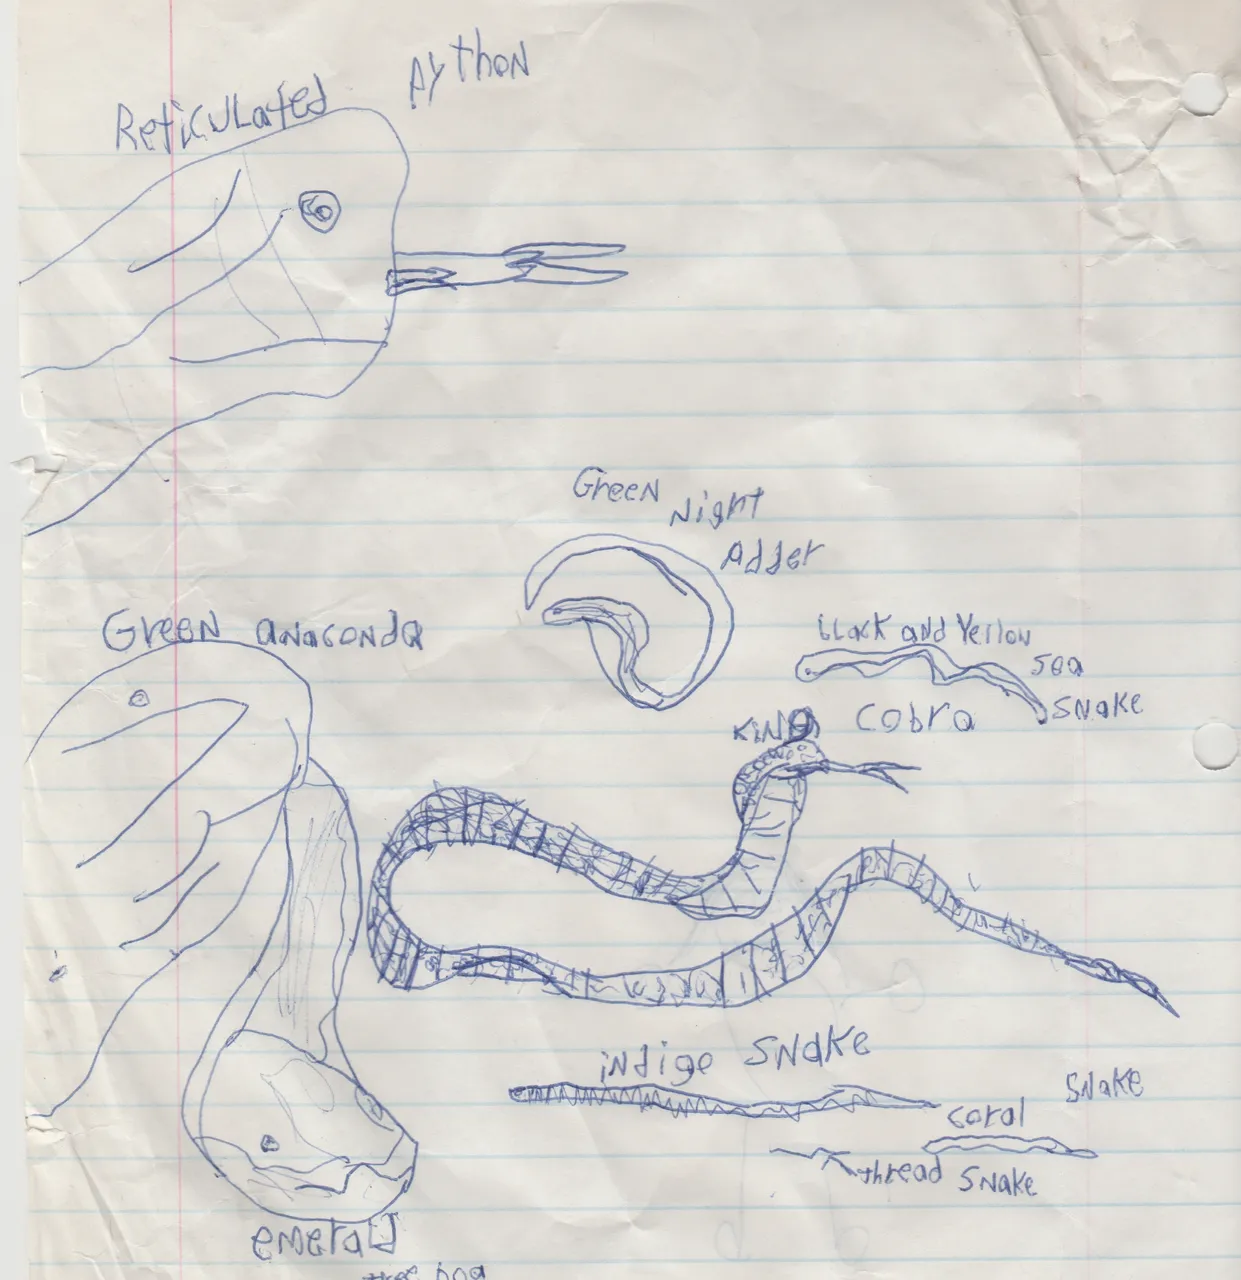 1996 maybe - Python - Snakes.jpg